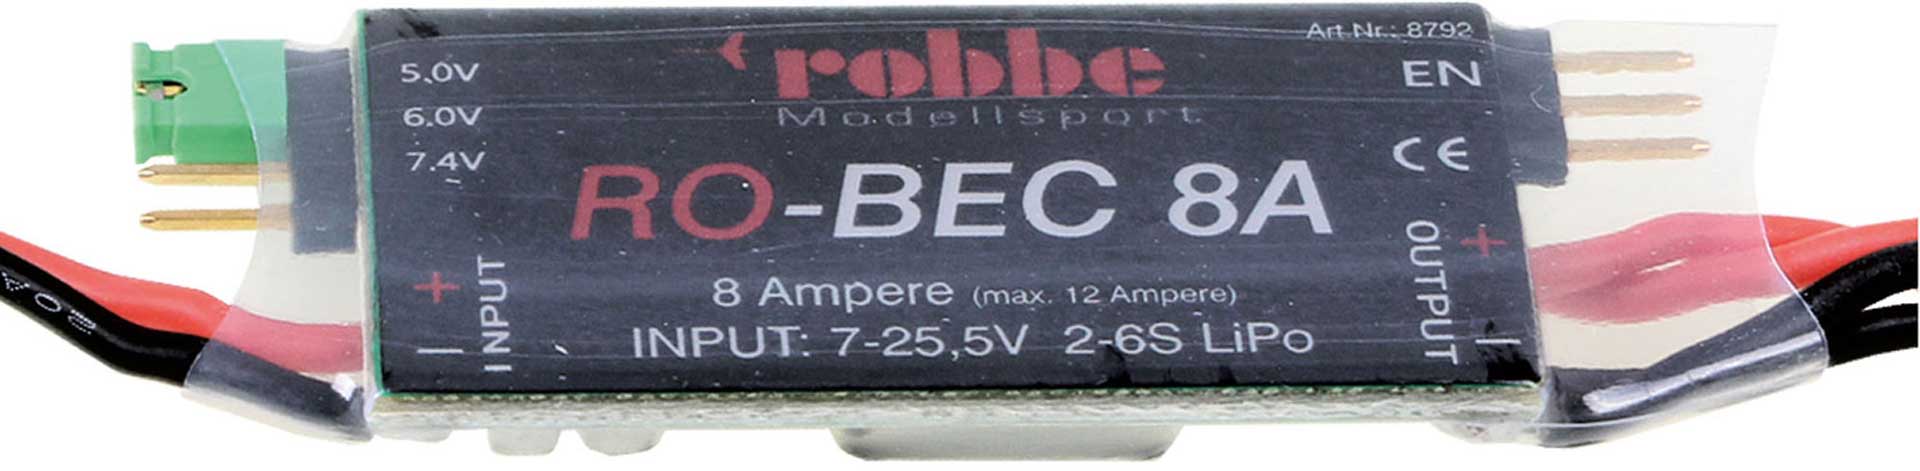 Robbe Modellsport RO-BEC 8A EMPFÄNGERSTROMVERSORGUNG